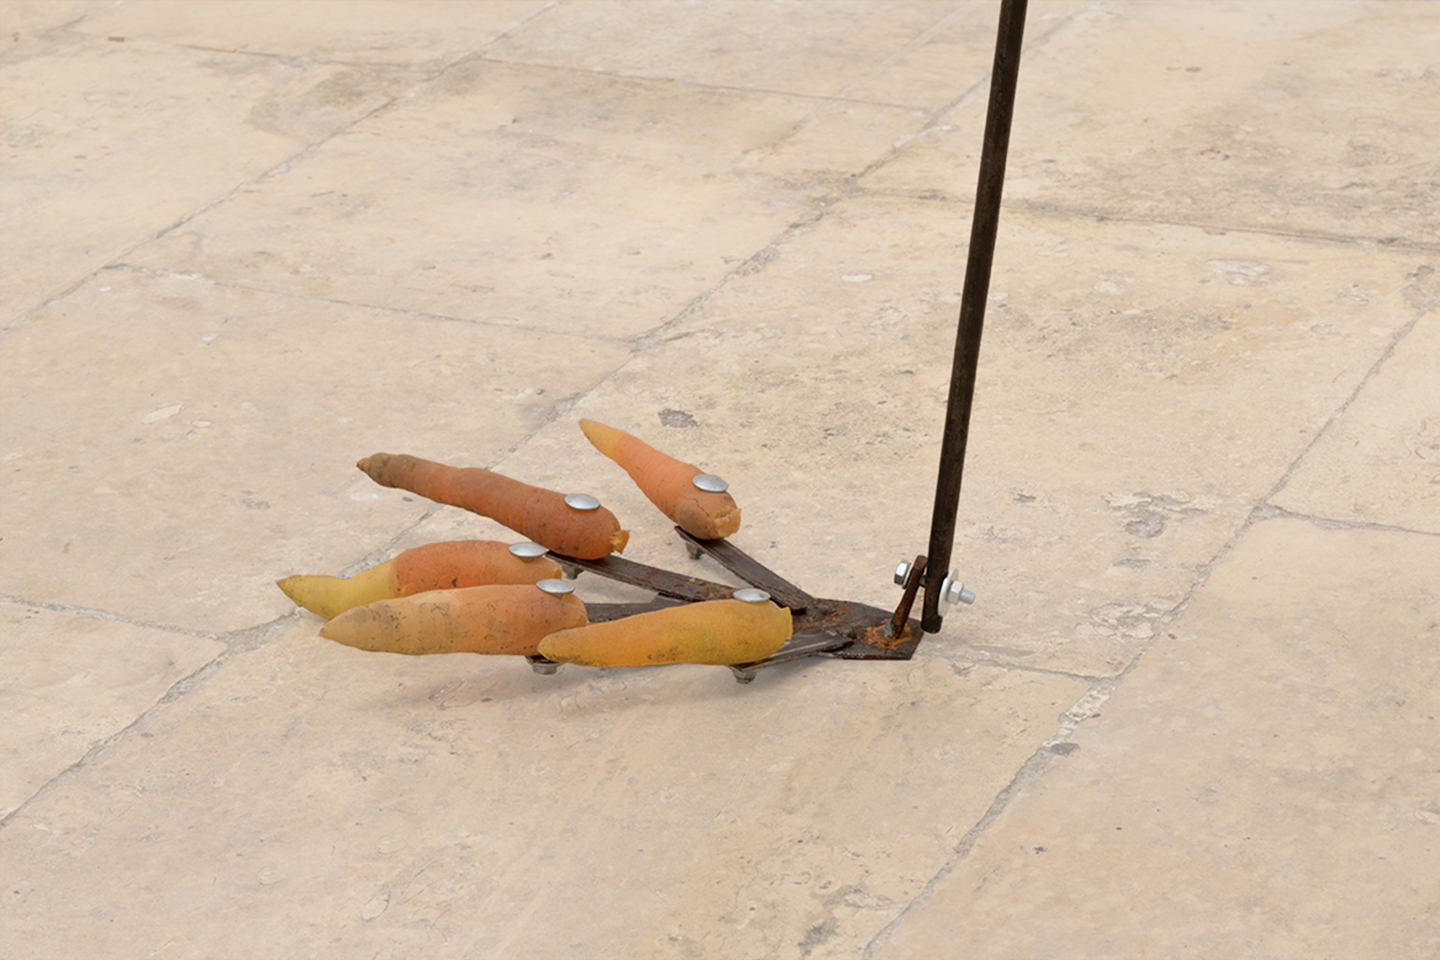 Lucia Leuci, Raccoglitore di carote adolescente, 2019, metallo, tessuto, resina, terra, filato, ruggine. 166x77x70 cm (detail)